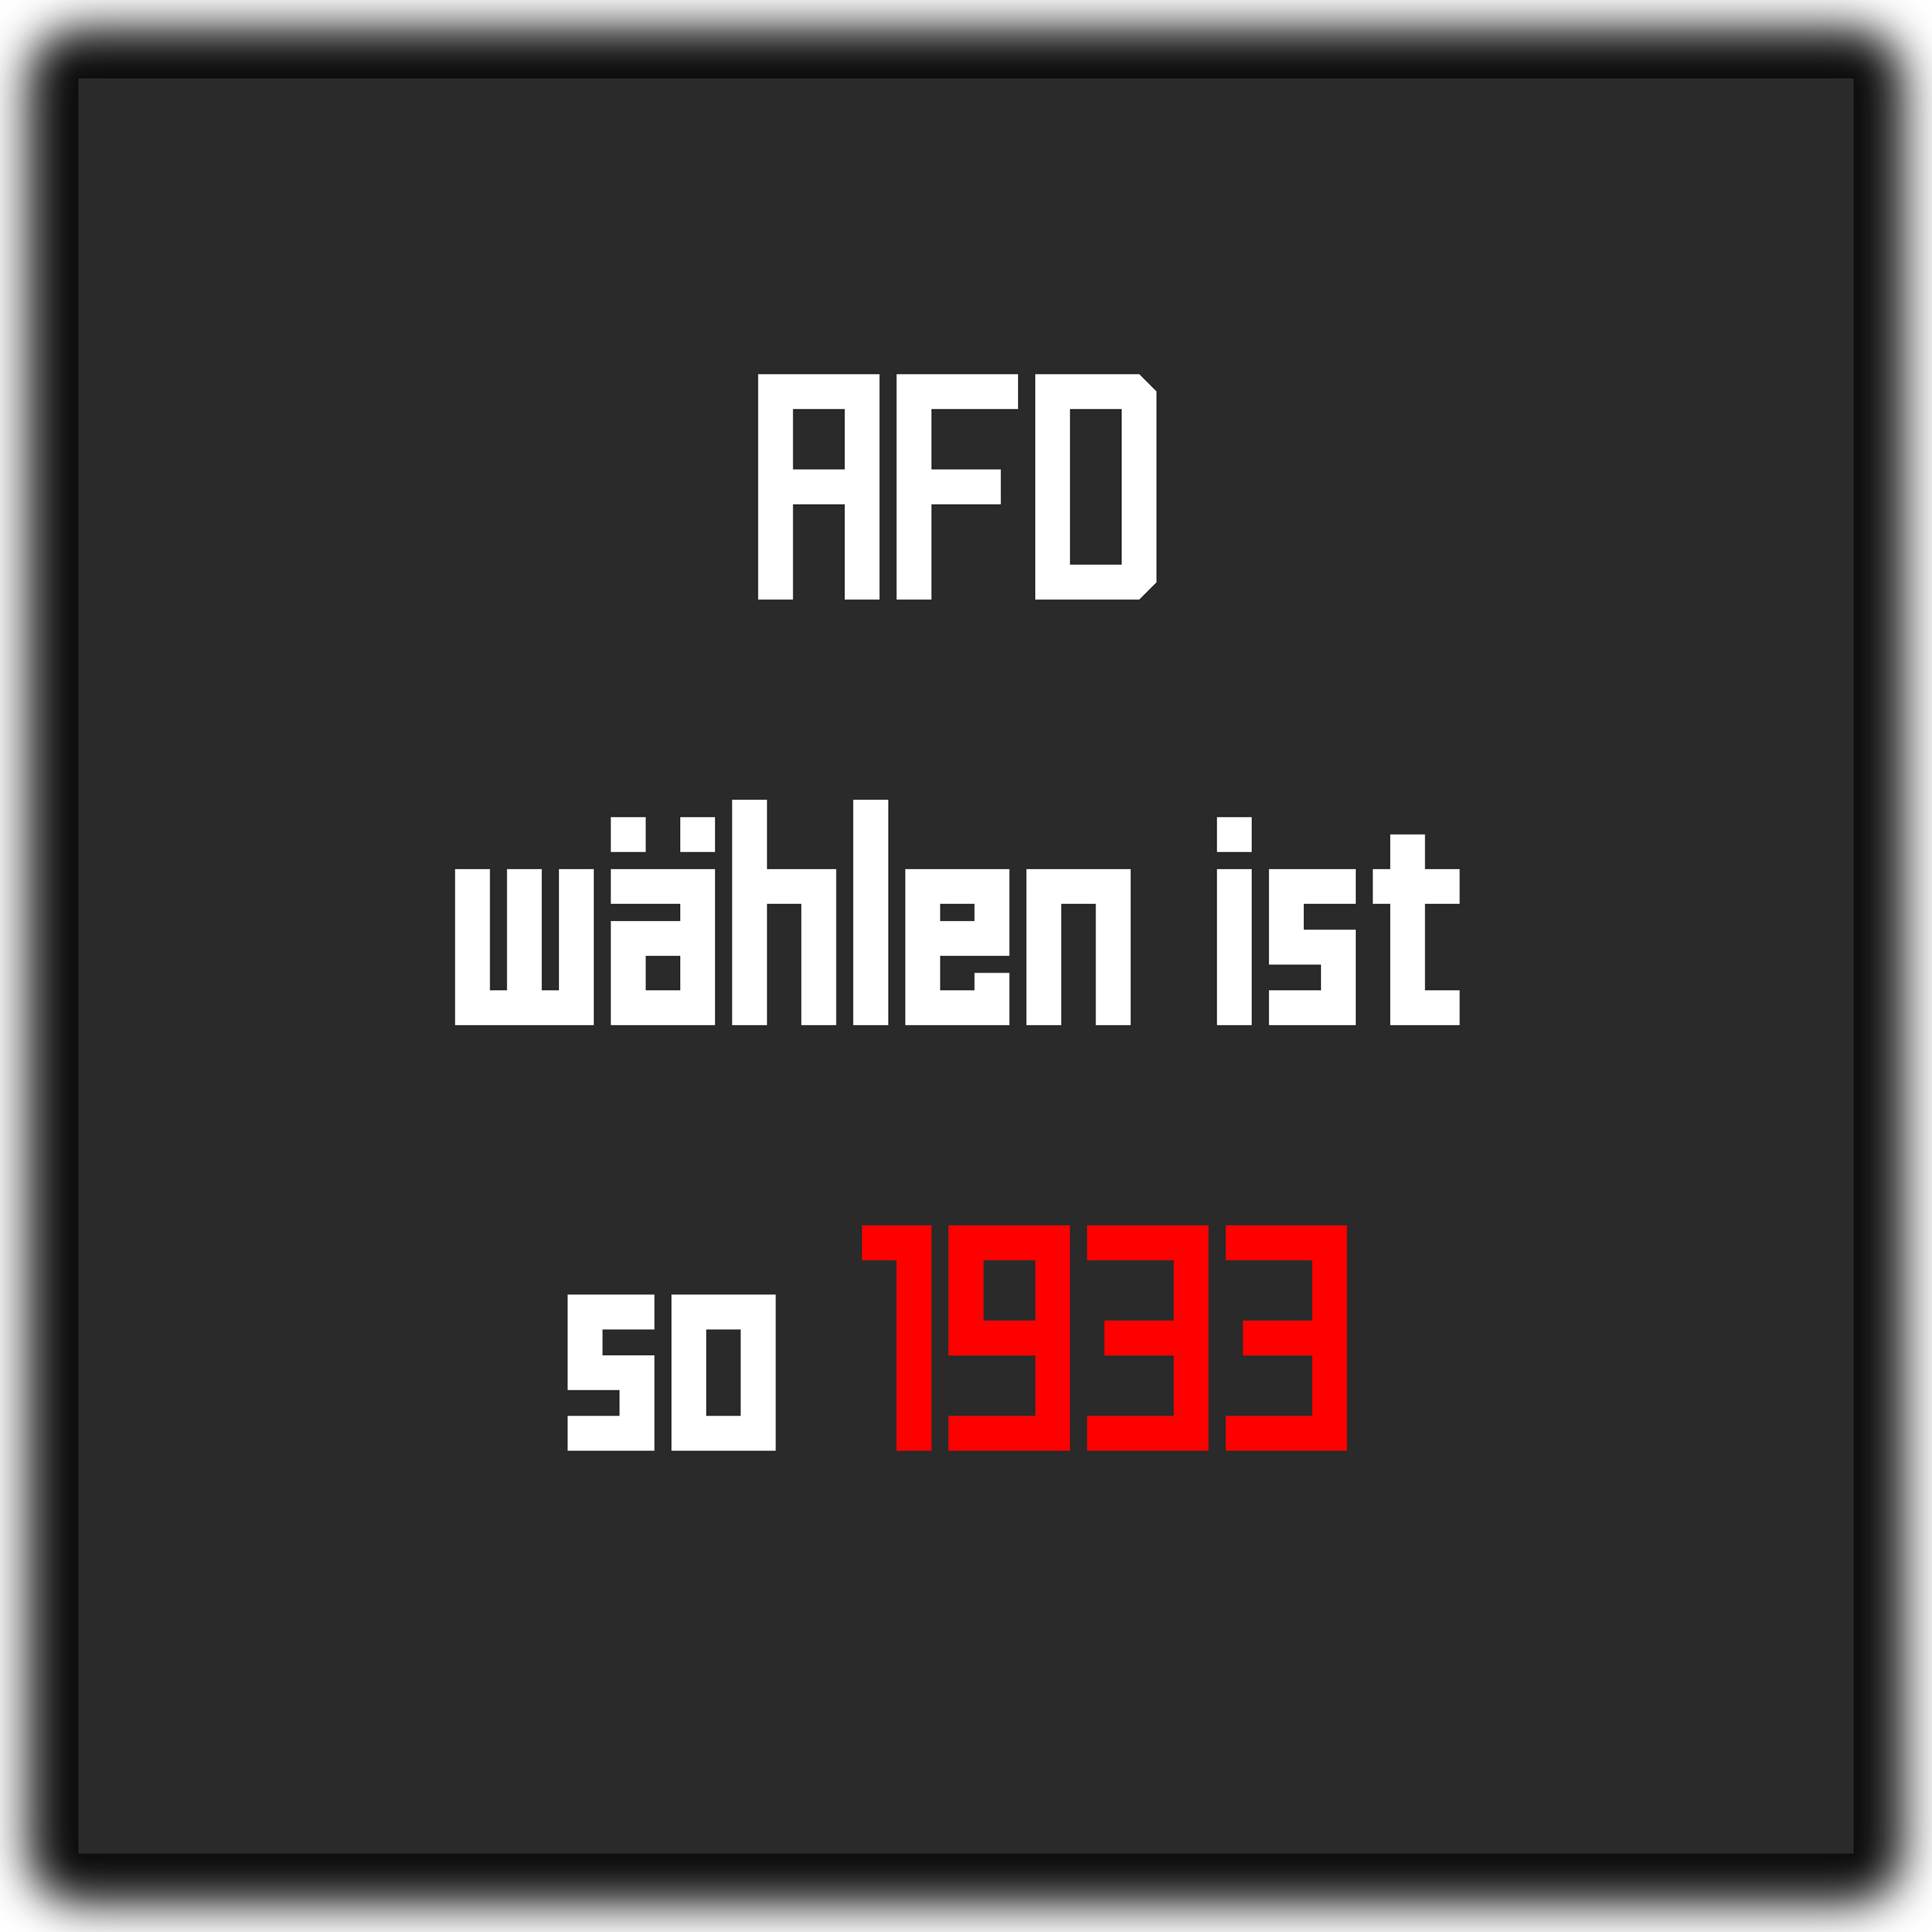 "AFD wählen ist so 1933" Sticker